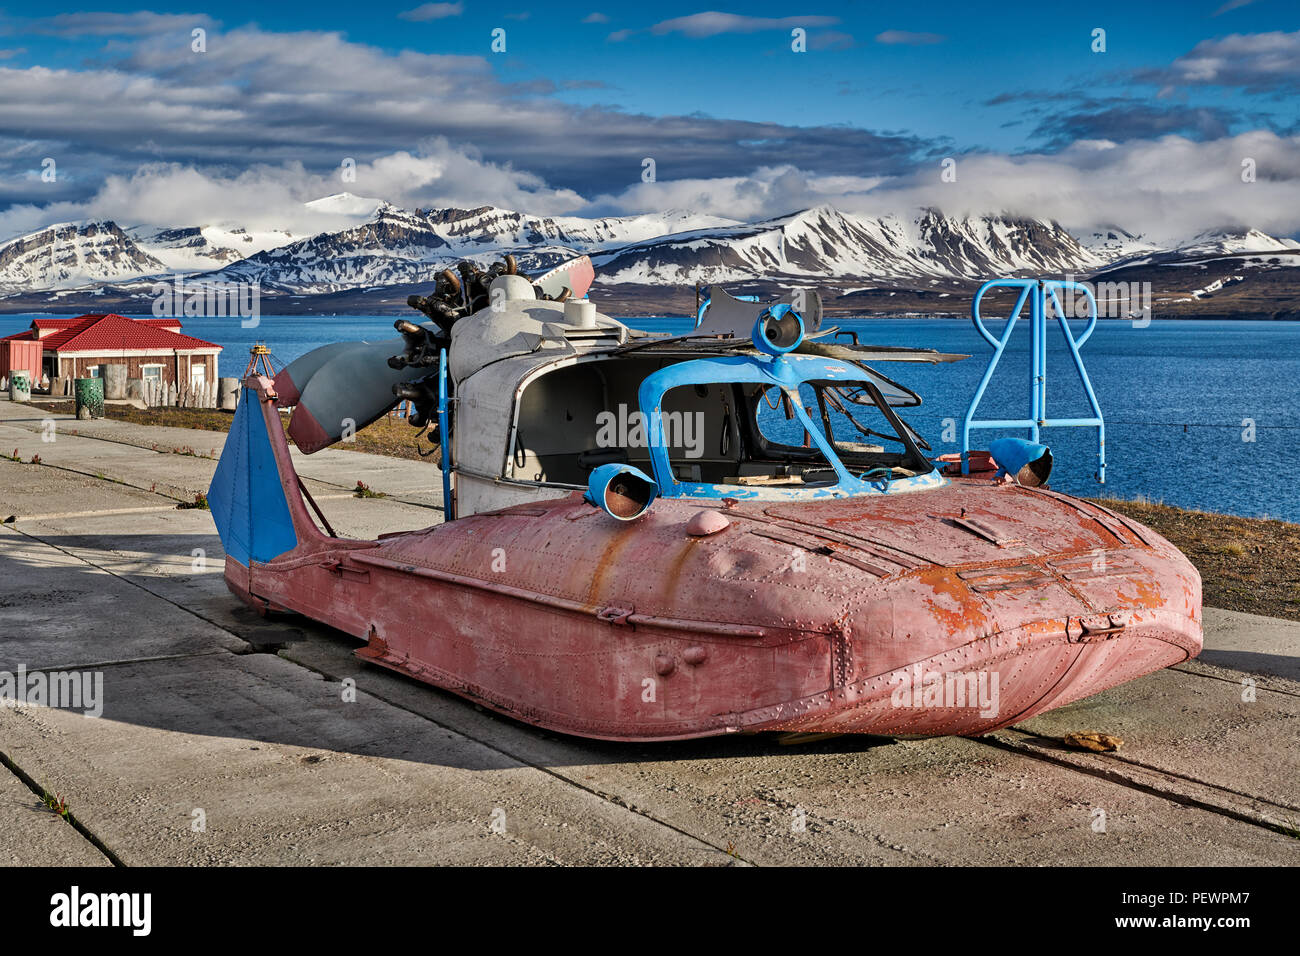 Vestiges de bateau volant étrange ville minière russe de Barentsburg Svalbard, Spitzberg, ou l'Europe Banque D'Images